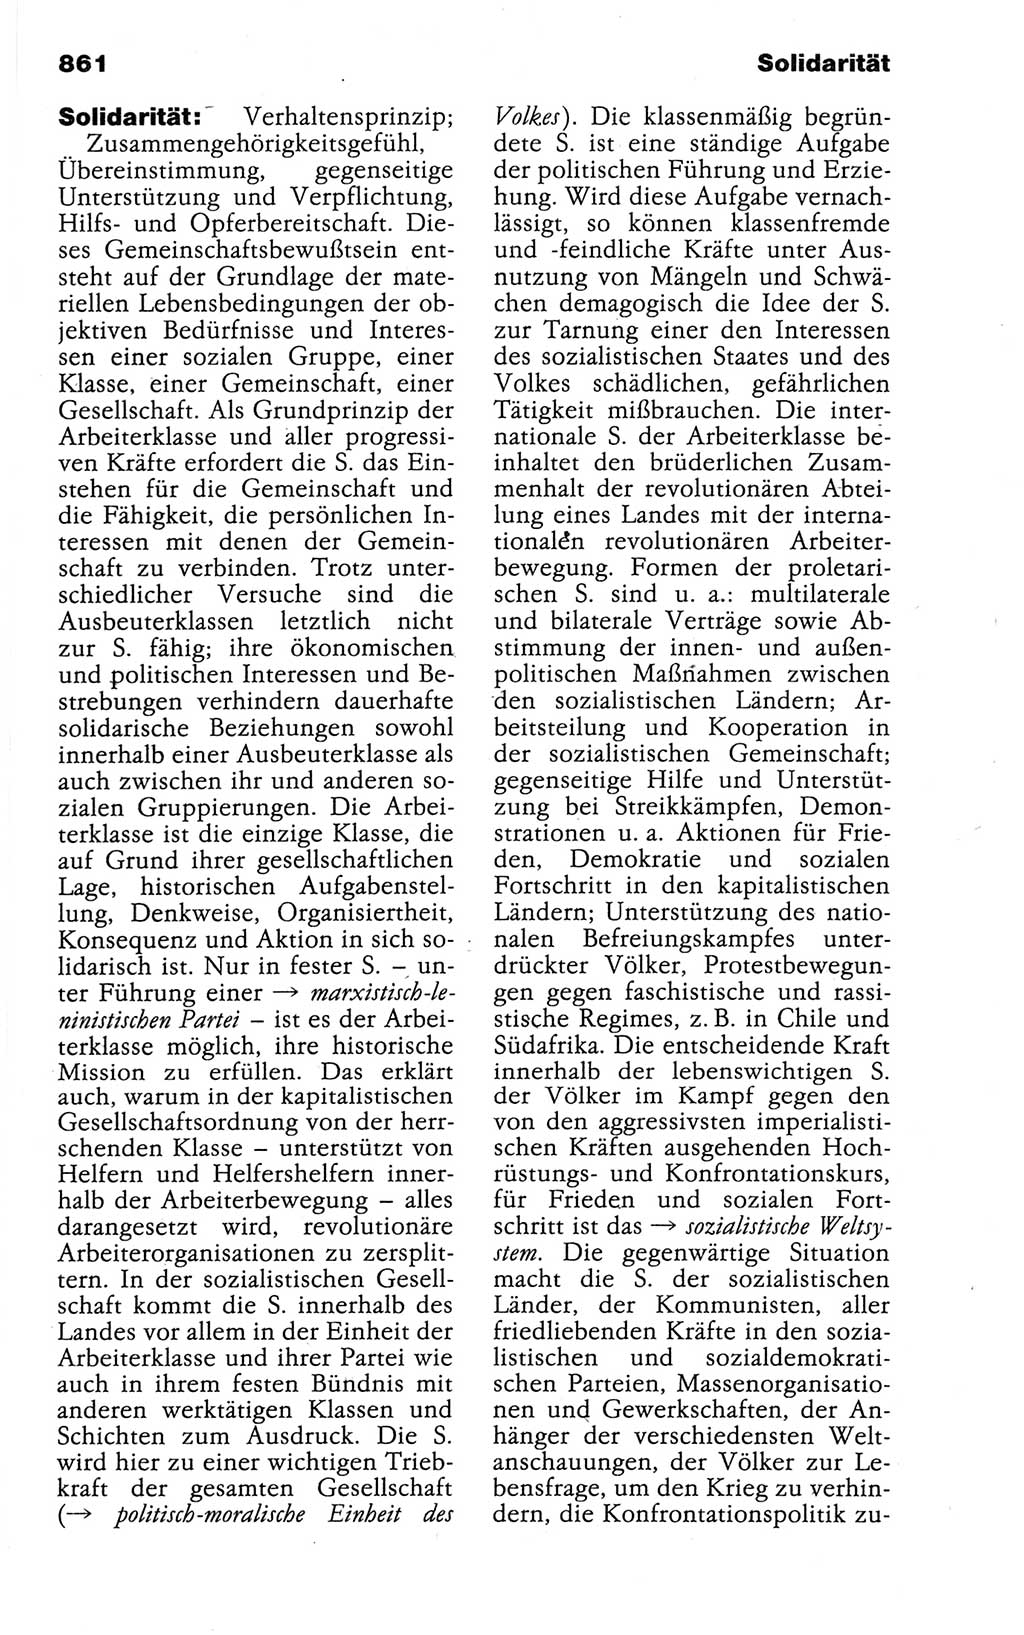 Kleines politisches Wörterbuch [Deutsche Demokratische Republik (DDR)] 1988, Seite 861 (Kl. pol. Wb. DDR 1988, S. 861)